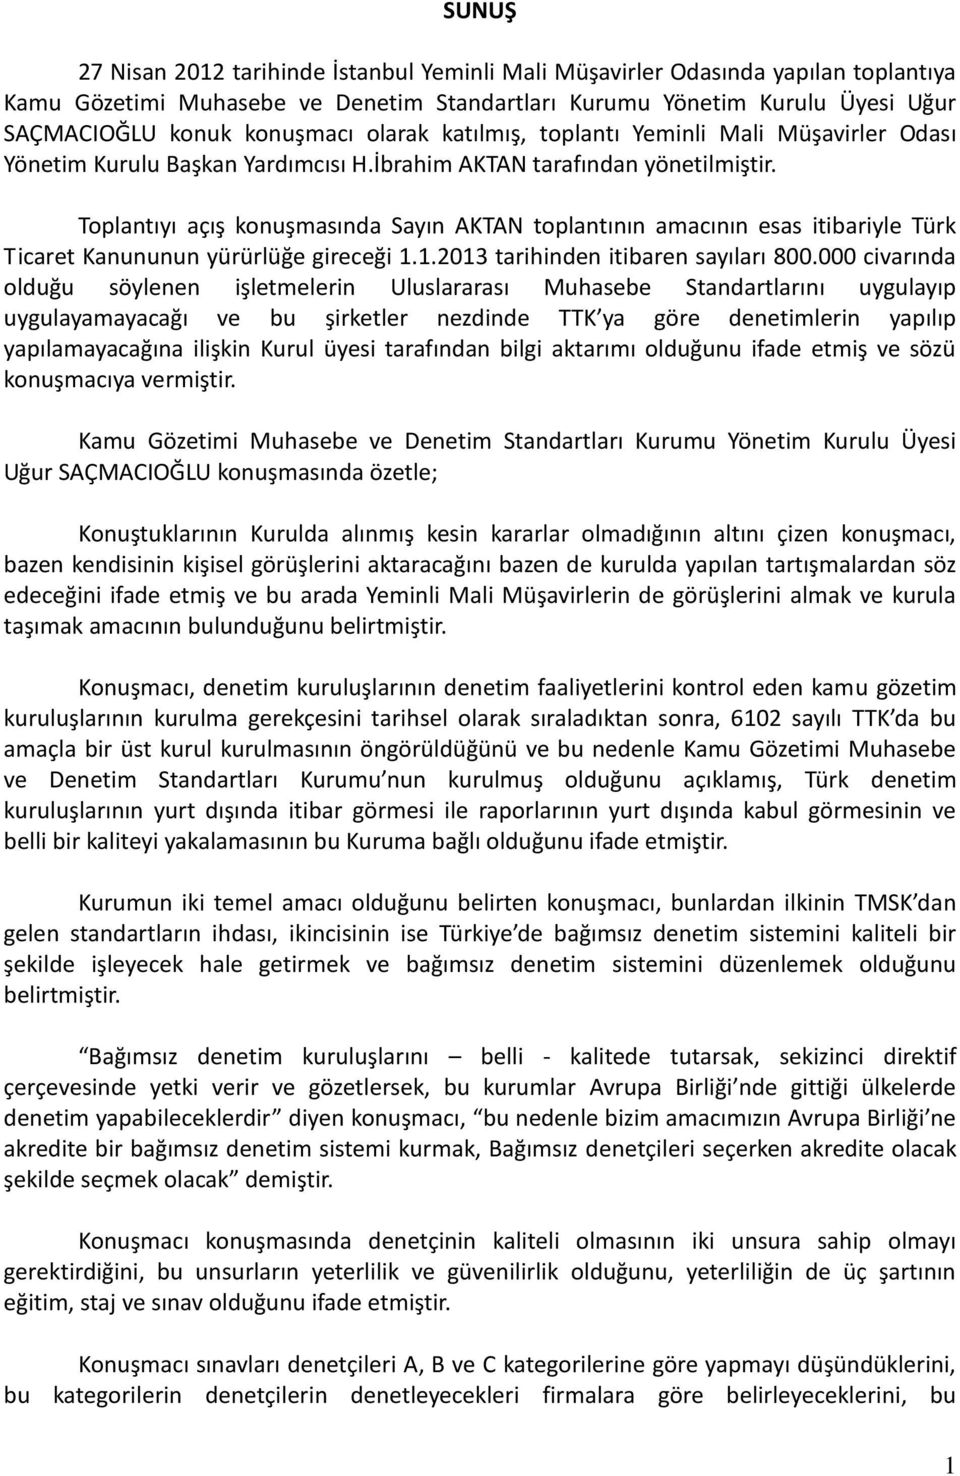 Toplantıyı açış konuşmasında Sayın AKTAN toplantının amacının esas itibariyle Türk Ticaret Kanununun yürürlüğe gireceği 1.1.2013 tarihinden itibaren sayıları 800.